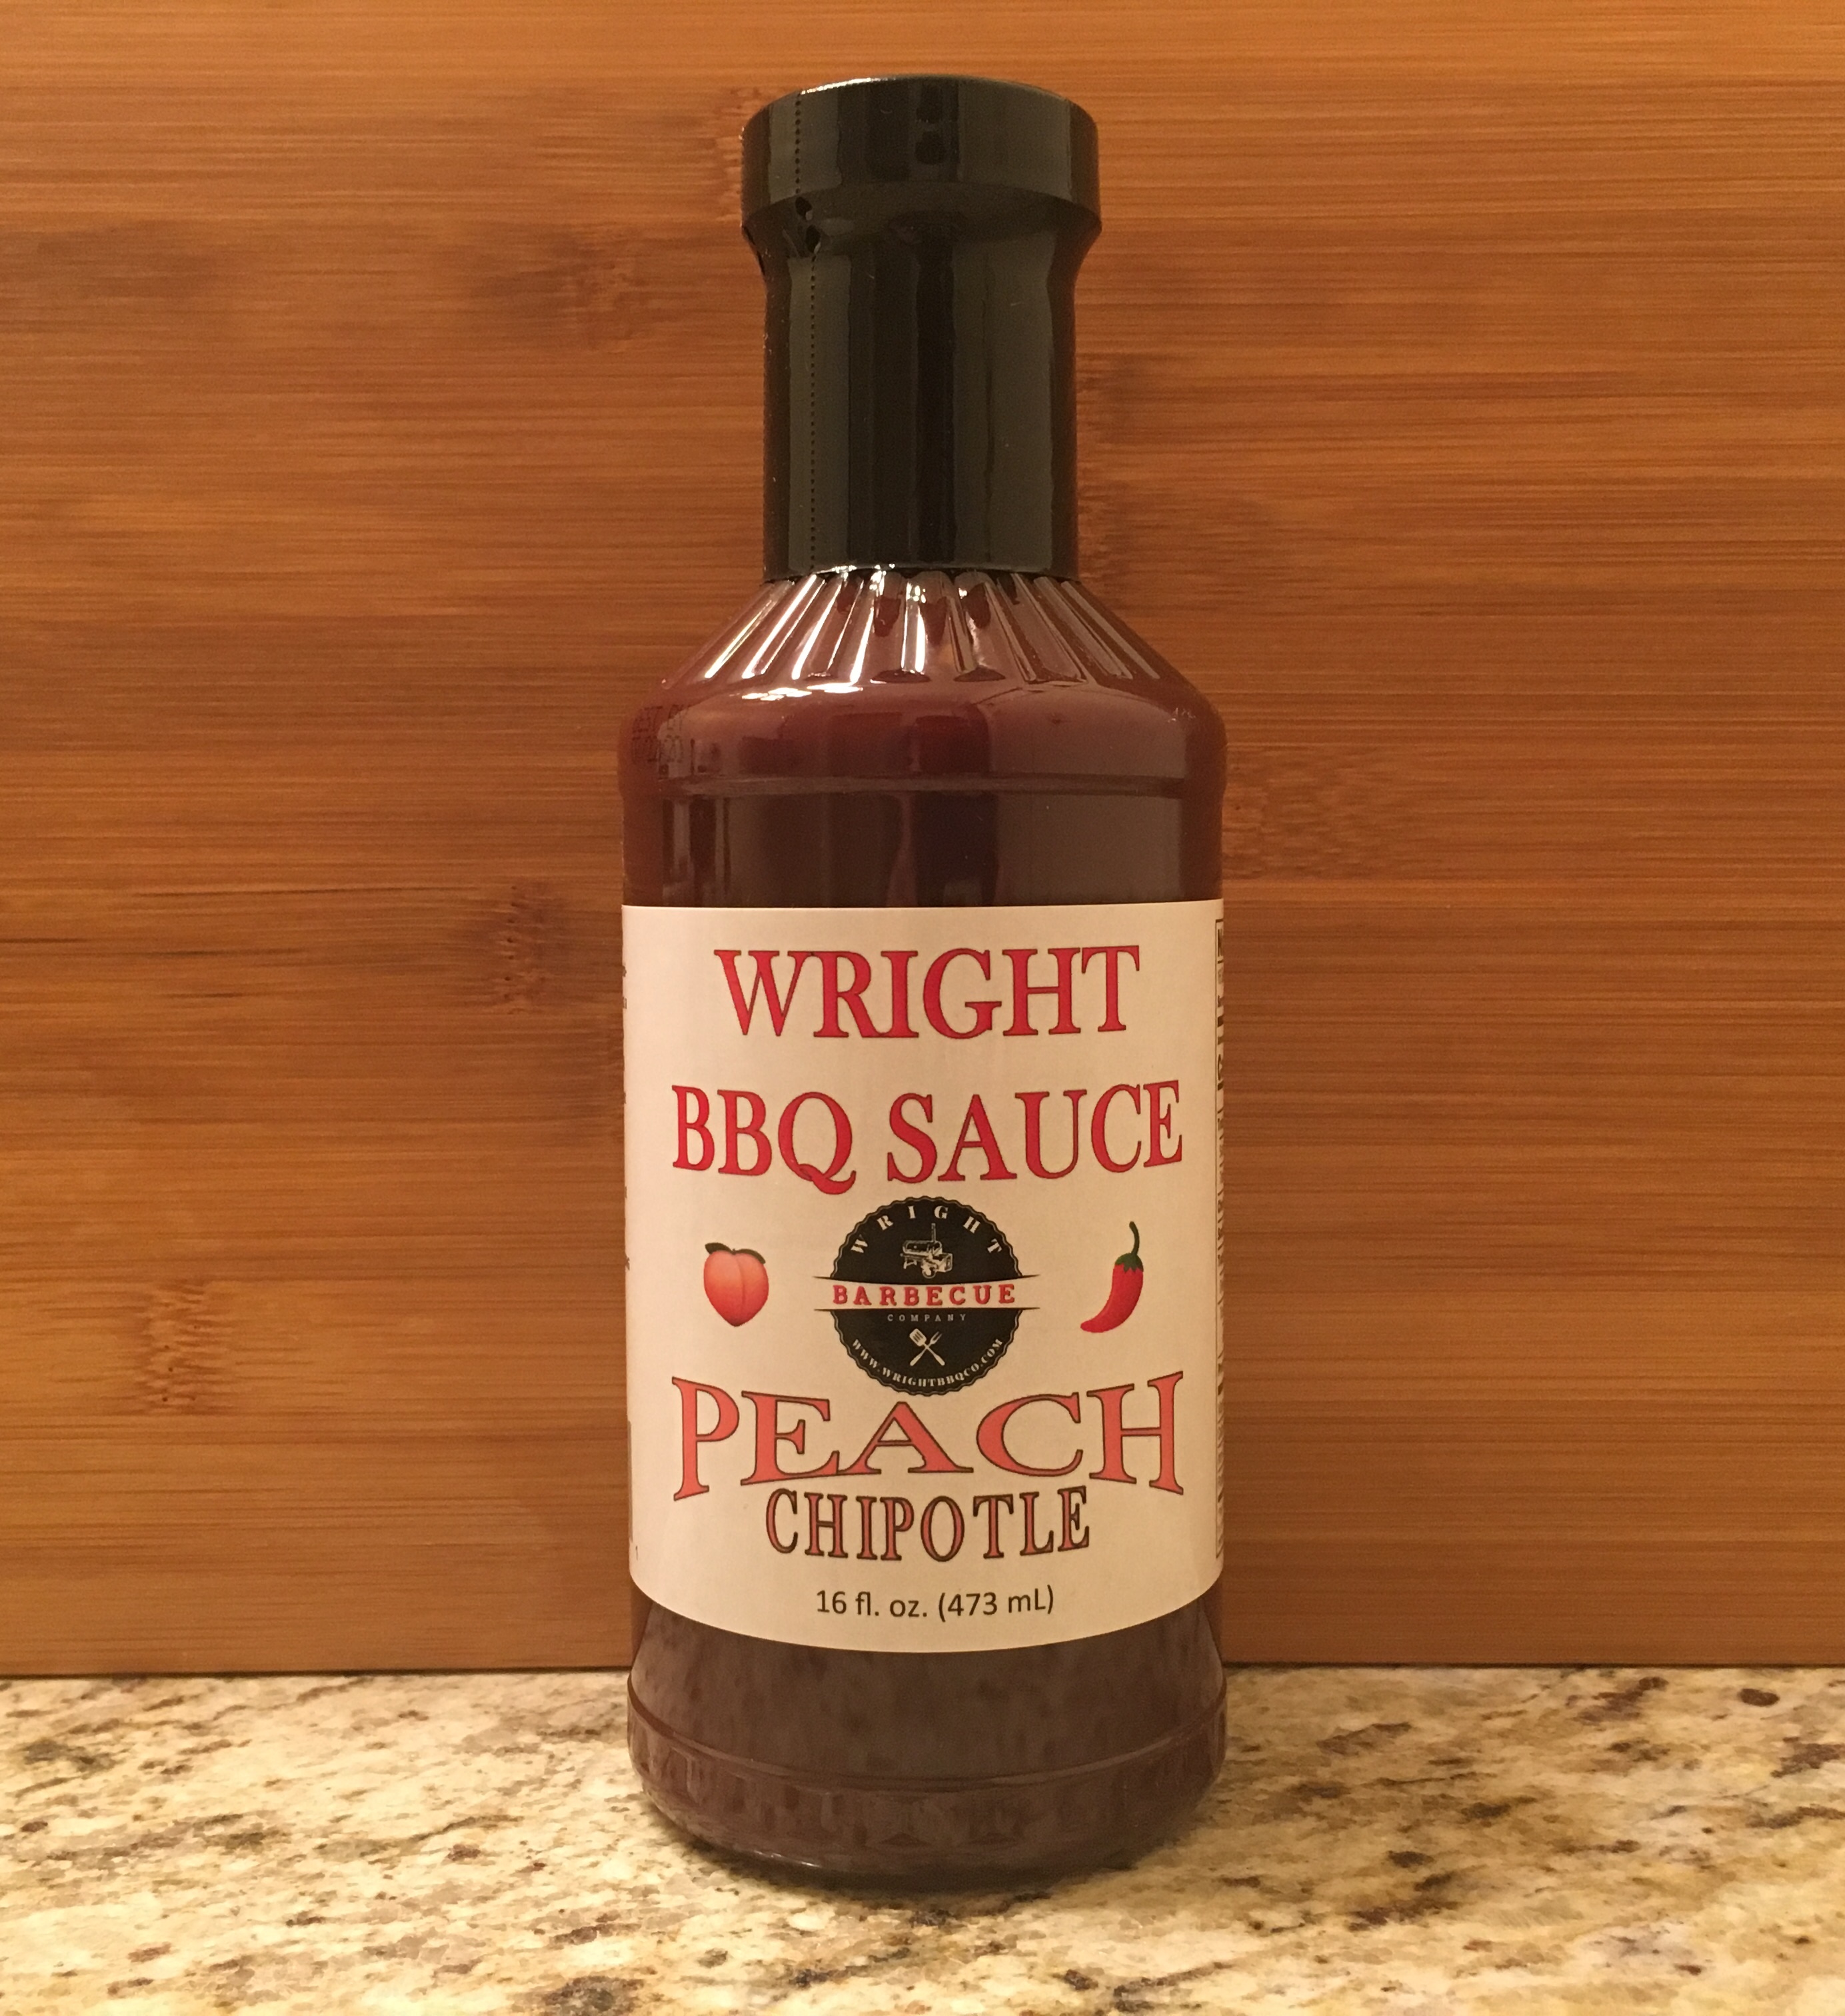 Wright BBQ Company - 16 fl.oz. Peach Chipotle BBQ Sauce #PCBSO